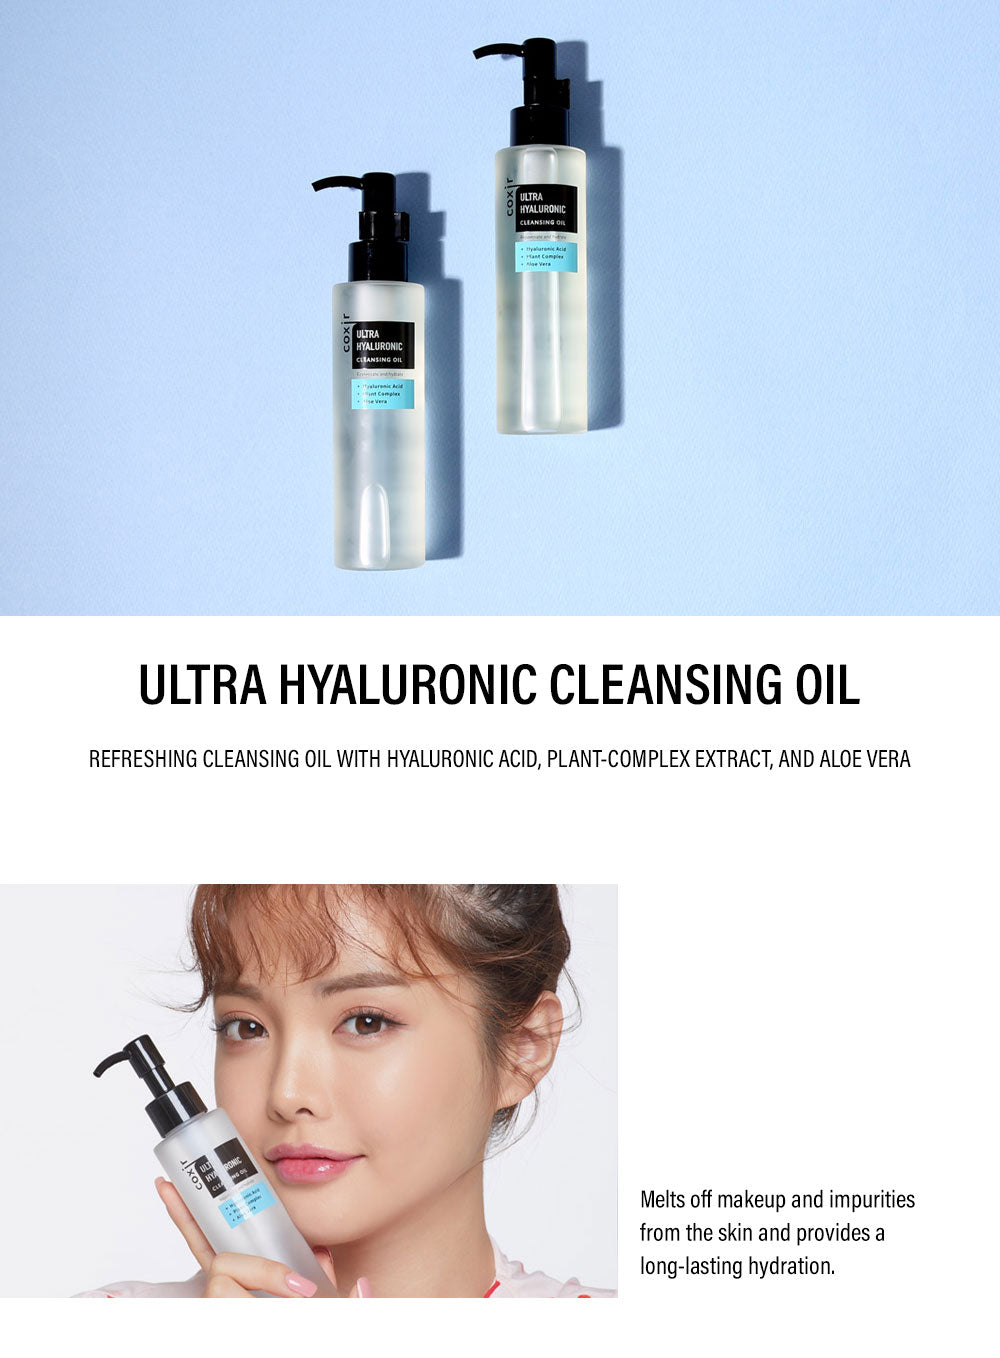 ultra-hyaluronic-cleansing-oil-1.jpg